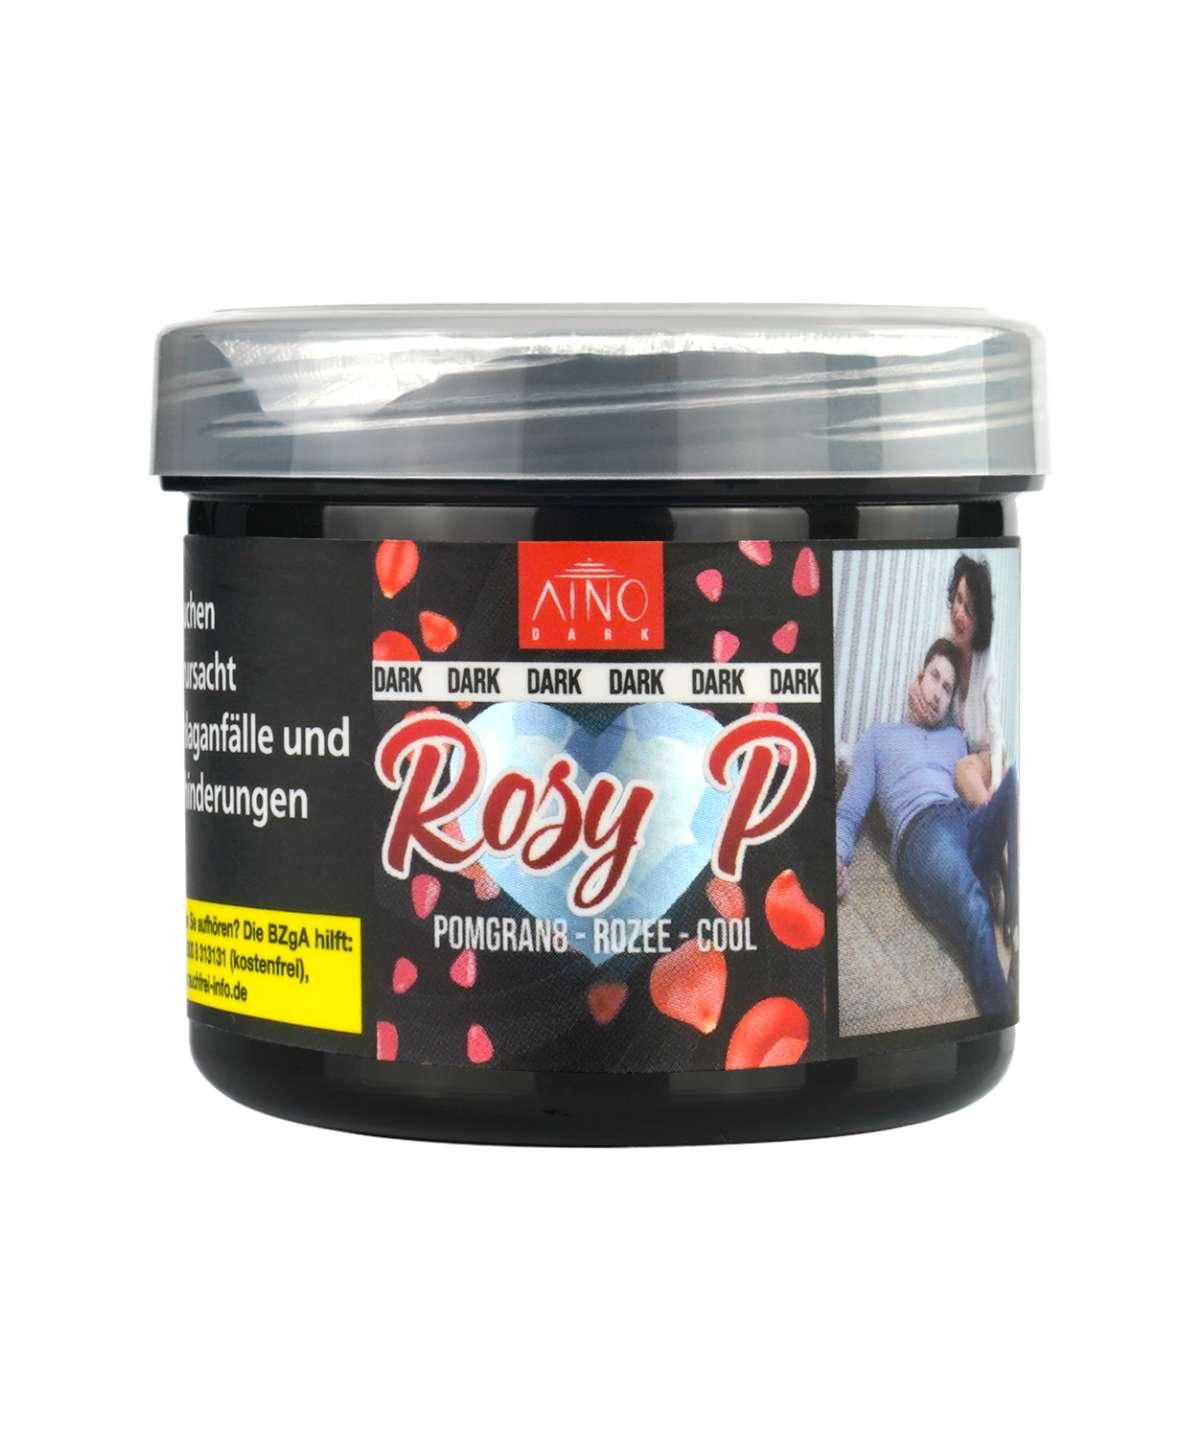 AINO Dark - Rosy P Granatapfel, Eis und Blume Shisha Tabak